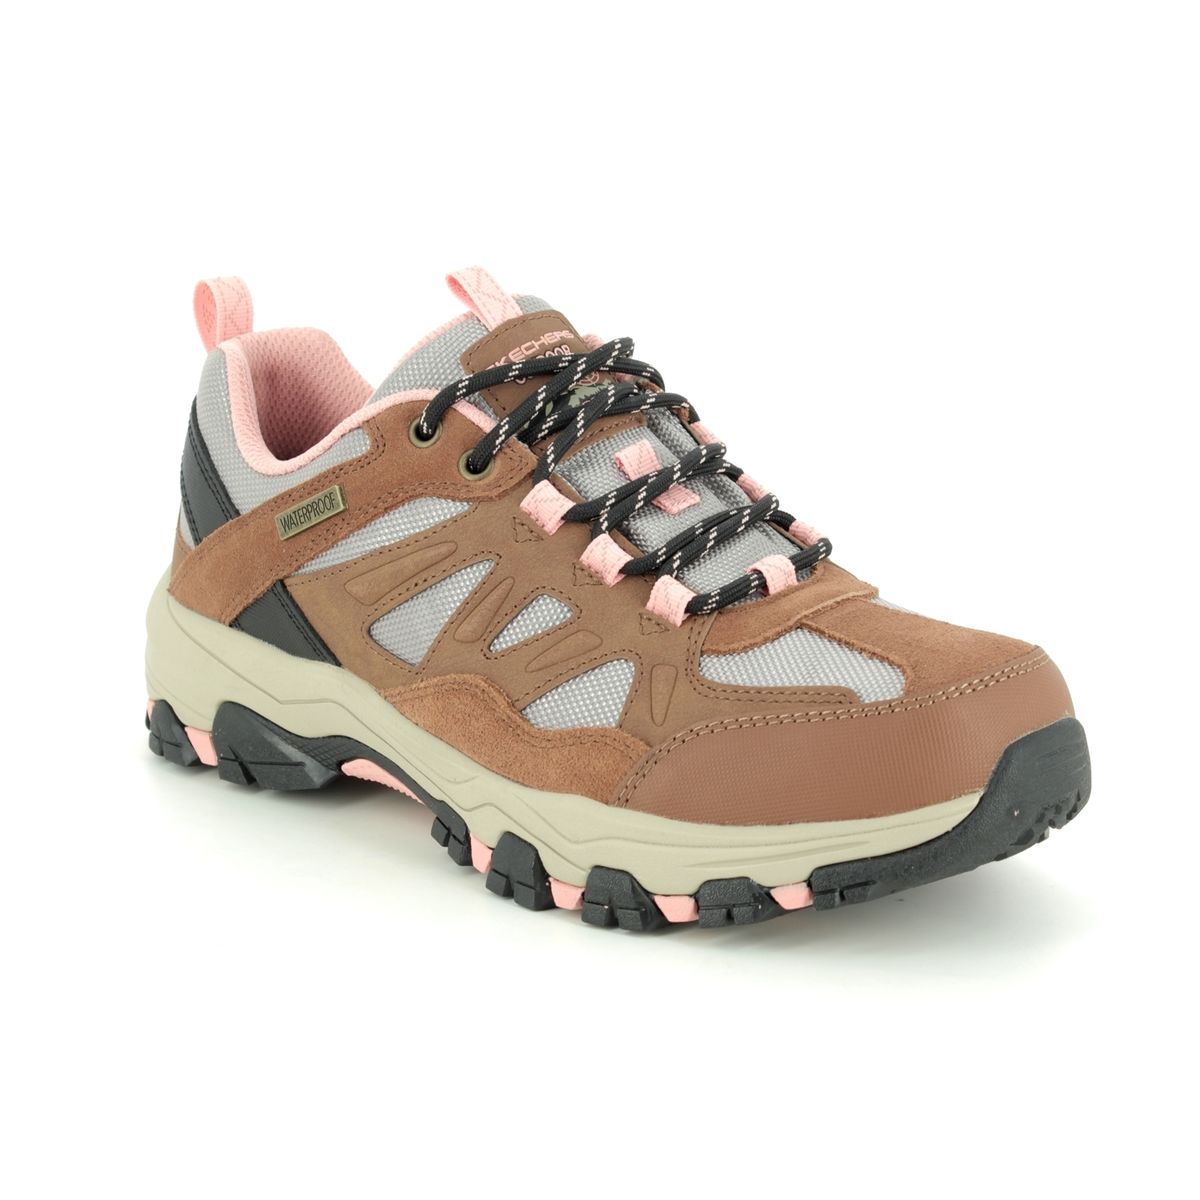 Skechers Selmen West Relaxed BRTN Brown Tan Womens Walking Shoes 167003 in a Plain Leather in Size 7